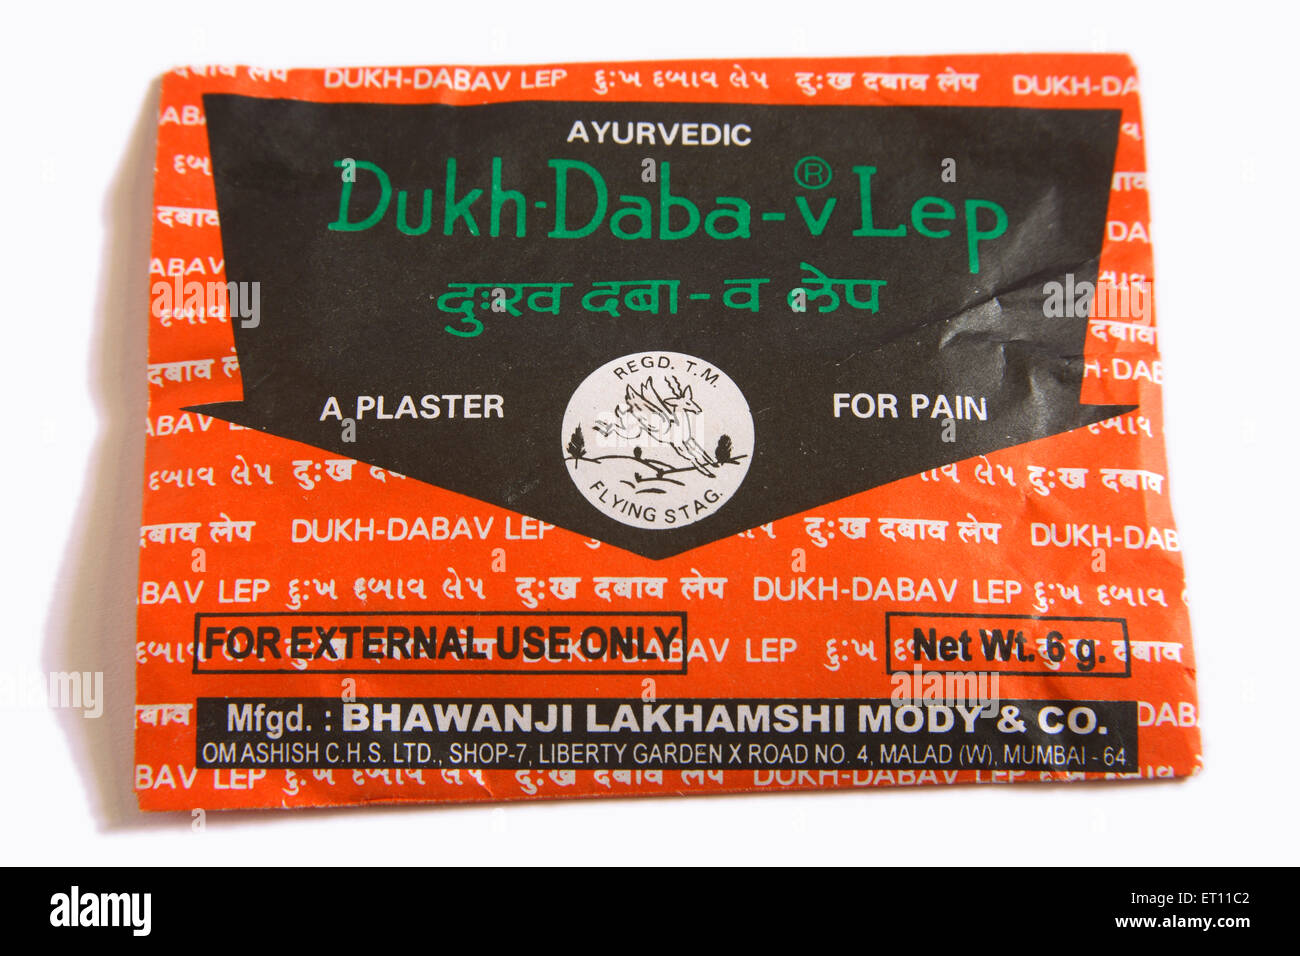 Ayurvedic medicina Dukh Daba v LEP cerotto per il dolore in pacchetto di plastica su sfondo bianco Foto Stock